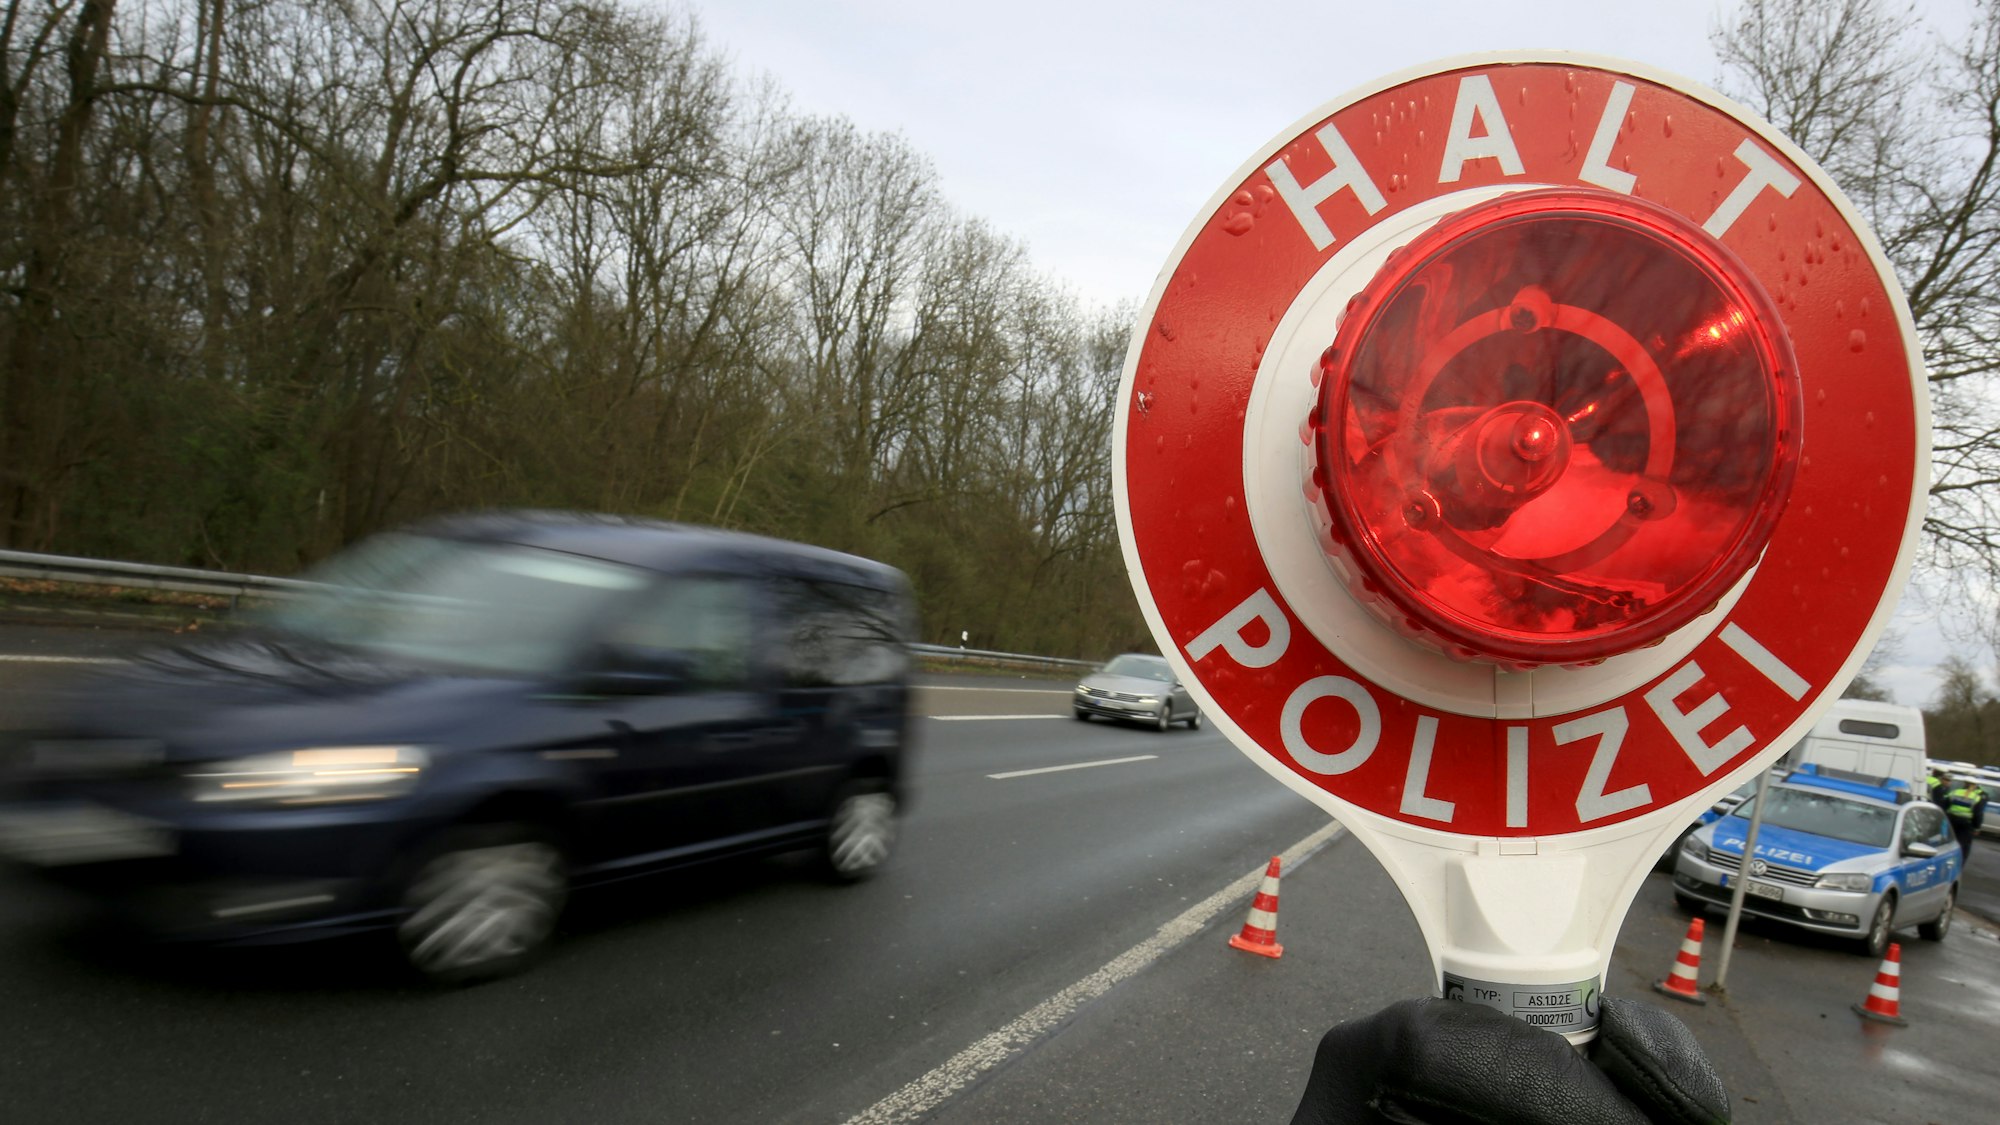 Ein Polizist winkt am 21.03.2017 auf der Autobahn 555 bei Köln (Nordrhein-Westfalen) Fahrzeuge zur Kontrolle raus.